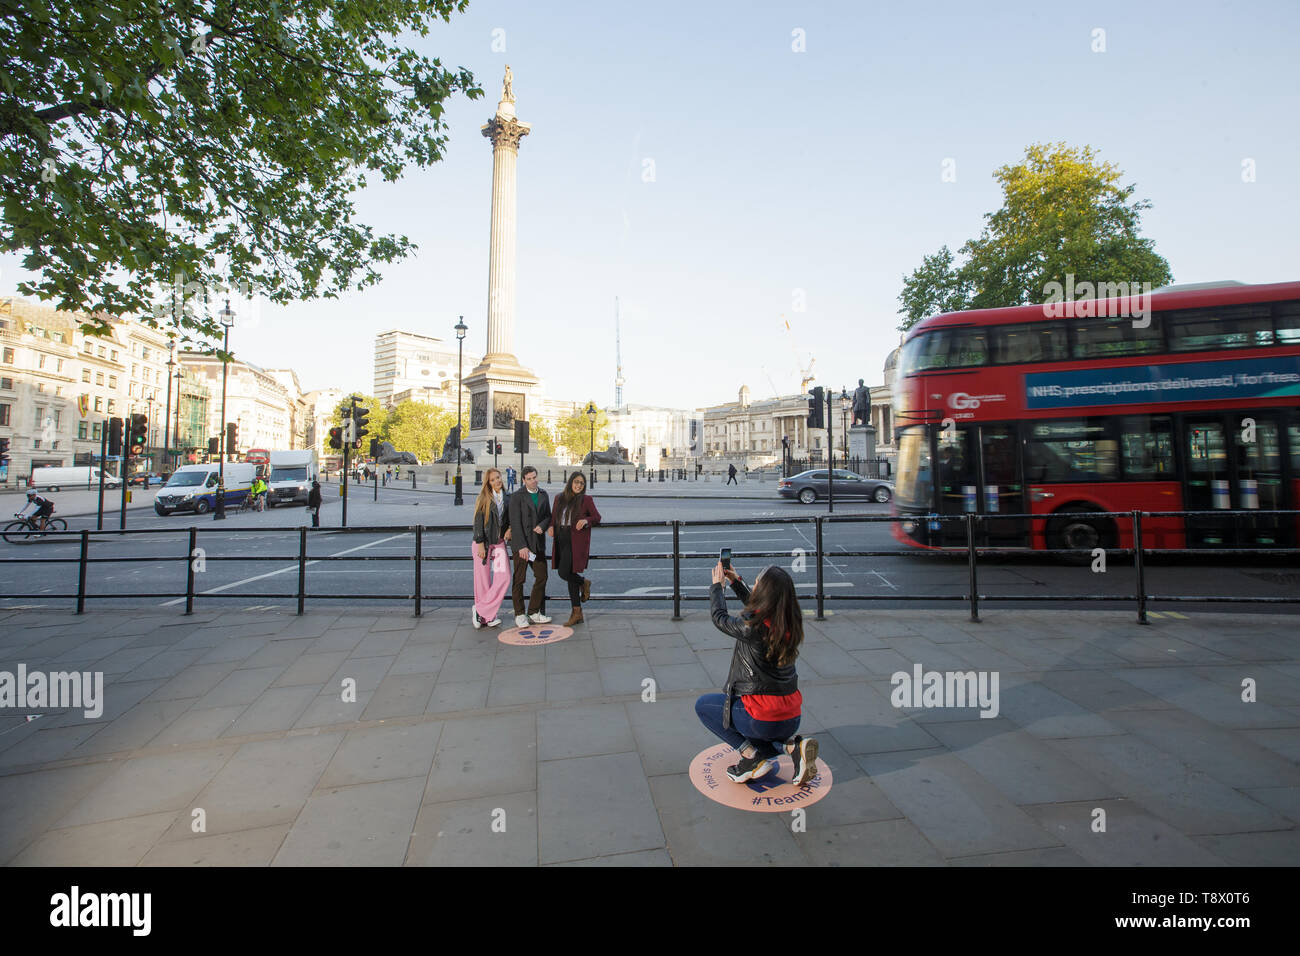 Los turistas tienen su foto tomada en Trafalgar Square en Londres, como Google ha trazado exactamente donde encaje la nación favorita de fondos fotográficos para celebrar el lanzamiento de pixel 3a. Foto de stock